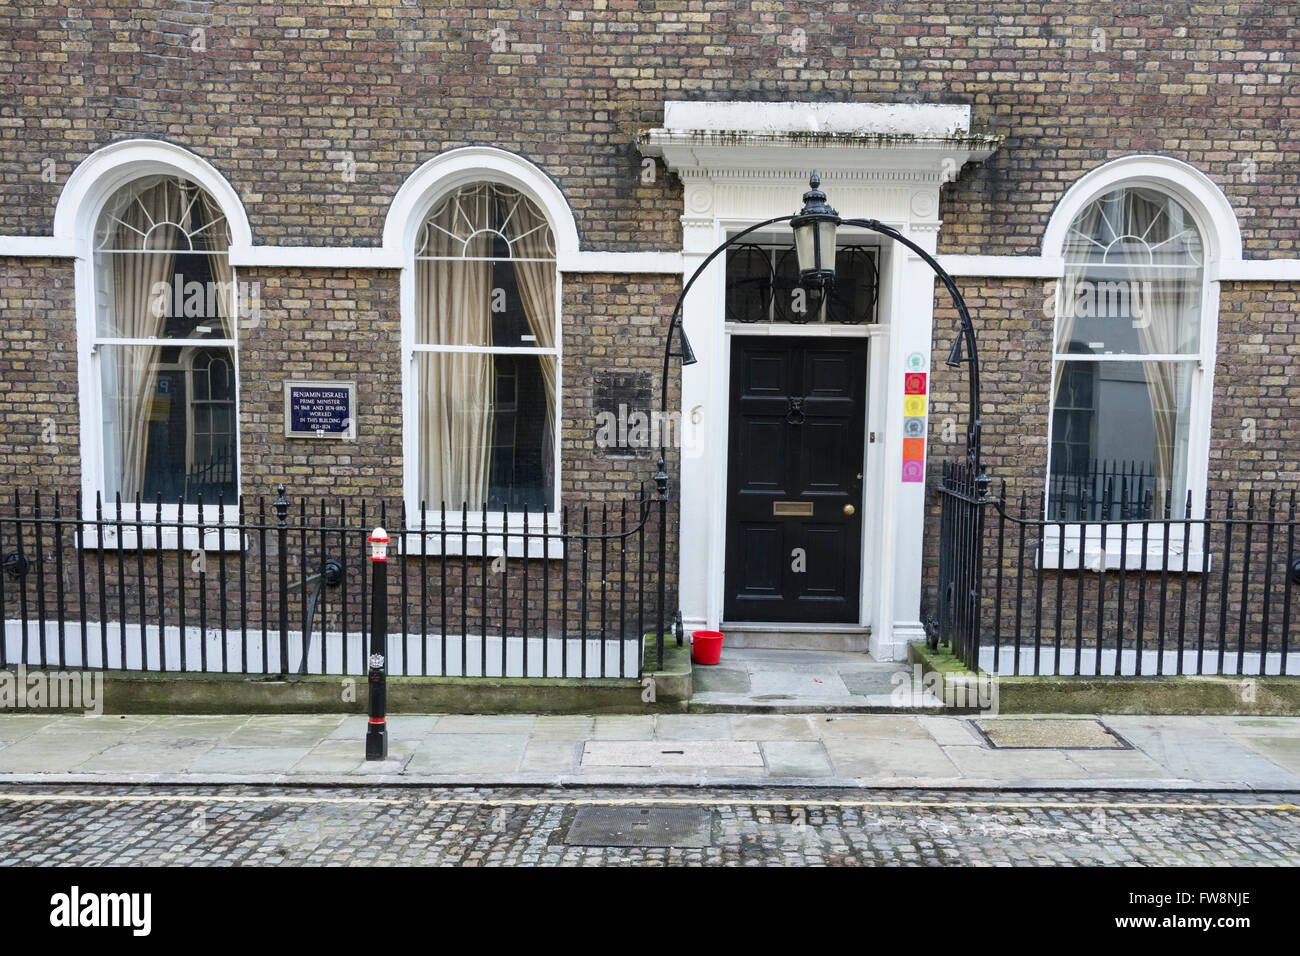 Blaue Plakette markiert einen ehemaligen Arbeitsplatz von Premierminister Benjamin Disraeli, 6 Friedrichs-Platz, alte Judentum, EC2, London, UK. Stockfoto